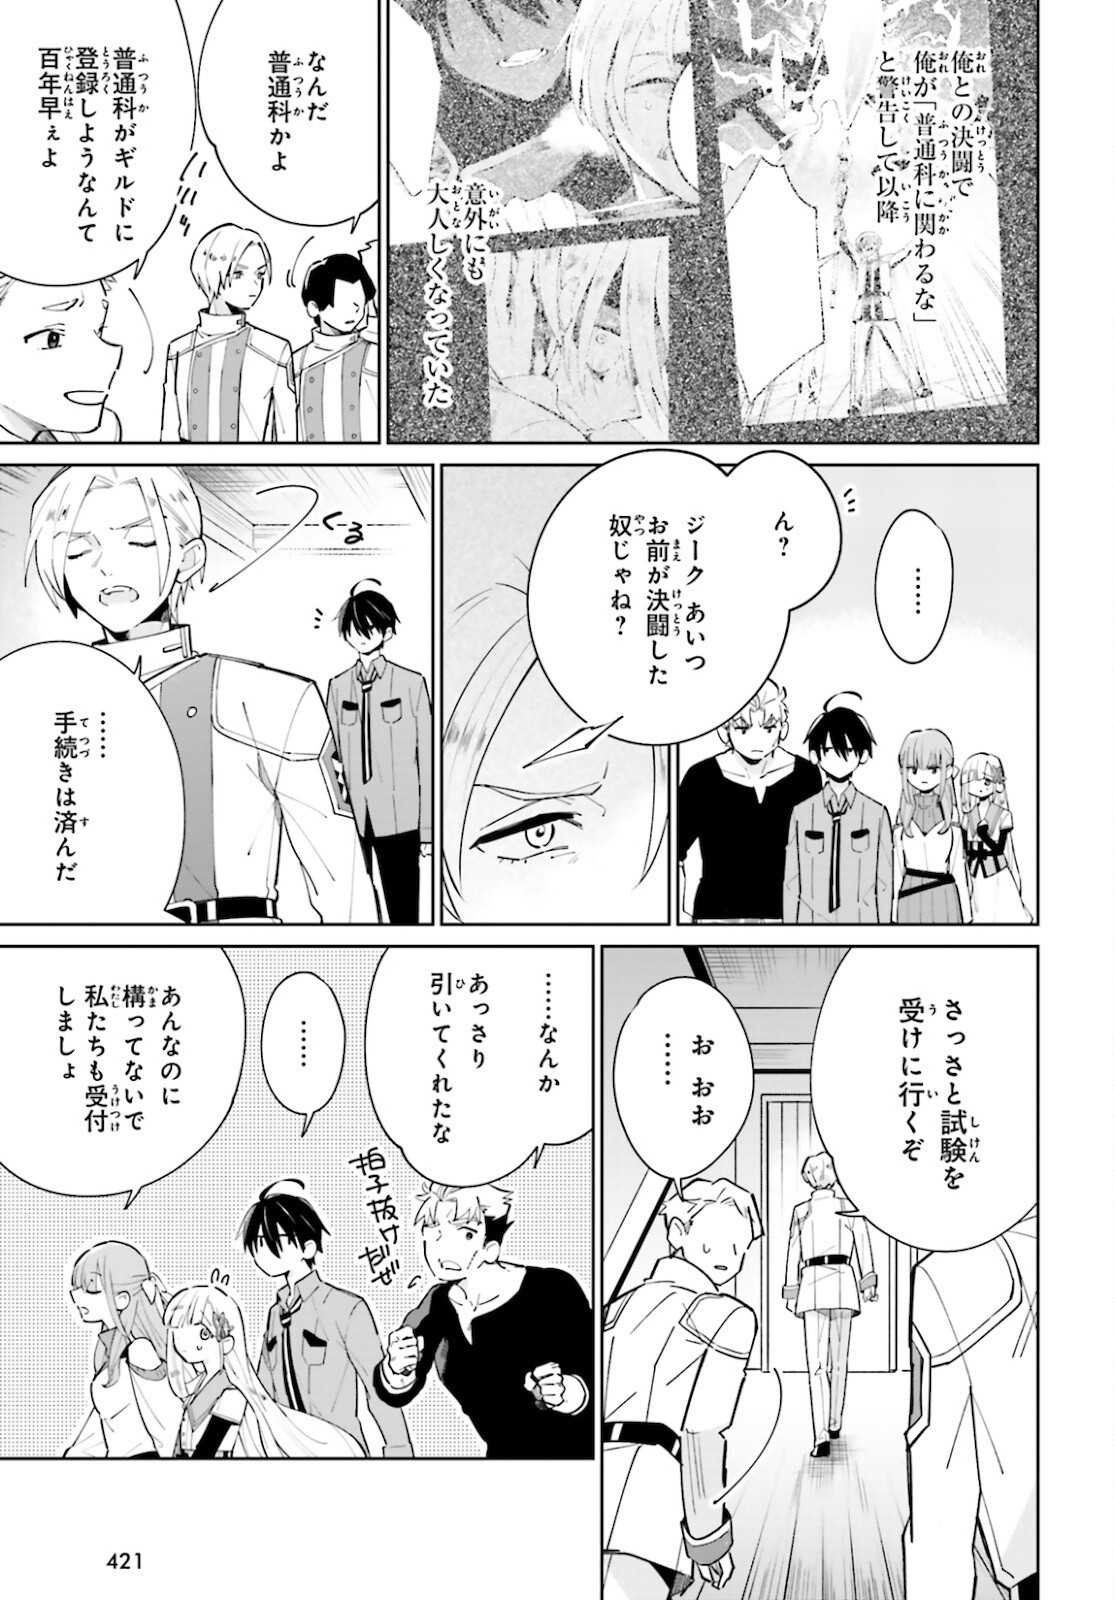 Kage-no-Eiyuu-no-Nichijou-tan-Ichi-no-Yuusha-no-Ura-de-An'yaku-Shite-ita-Saikyou-no-Eijento-Soshiki-ga-Kaitai-sareta-no-de-Shoutai-Kakushite-Hito-nami-no-Nichijou-o-Ouka-suru - Chapter 12 - Page 5